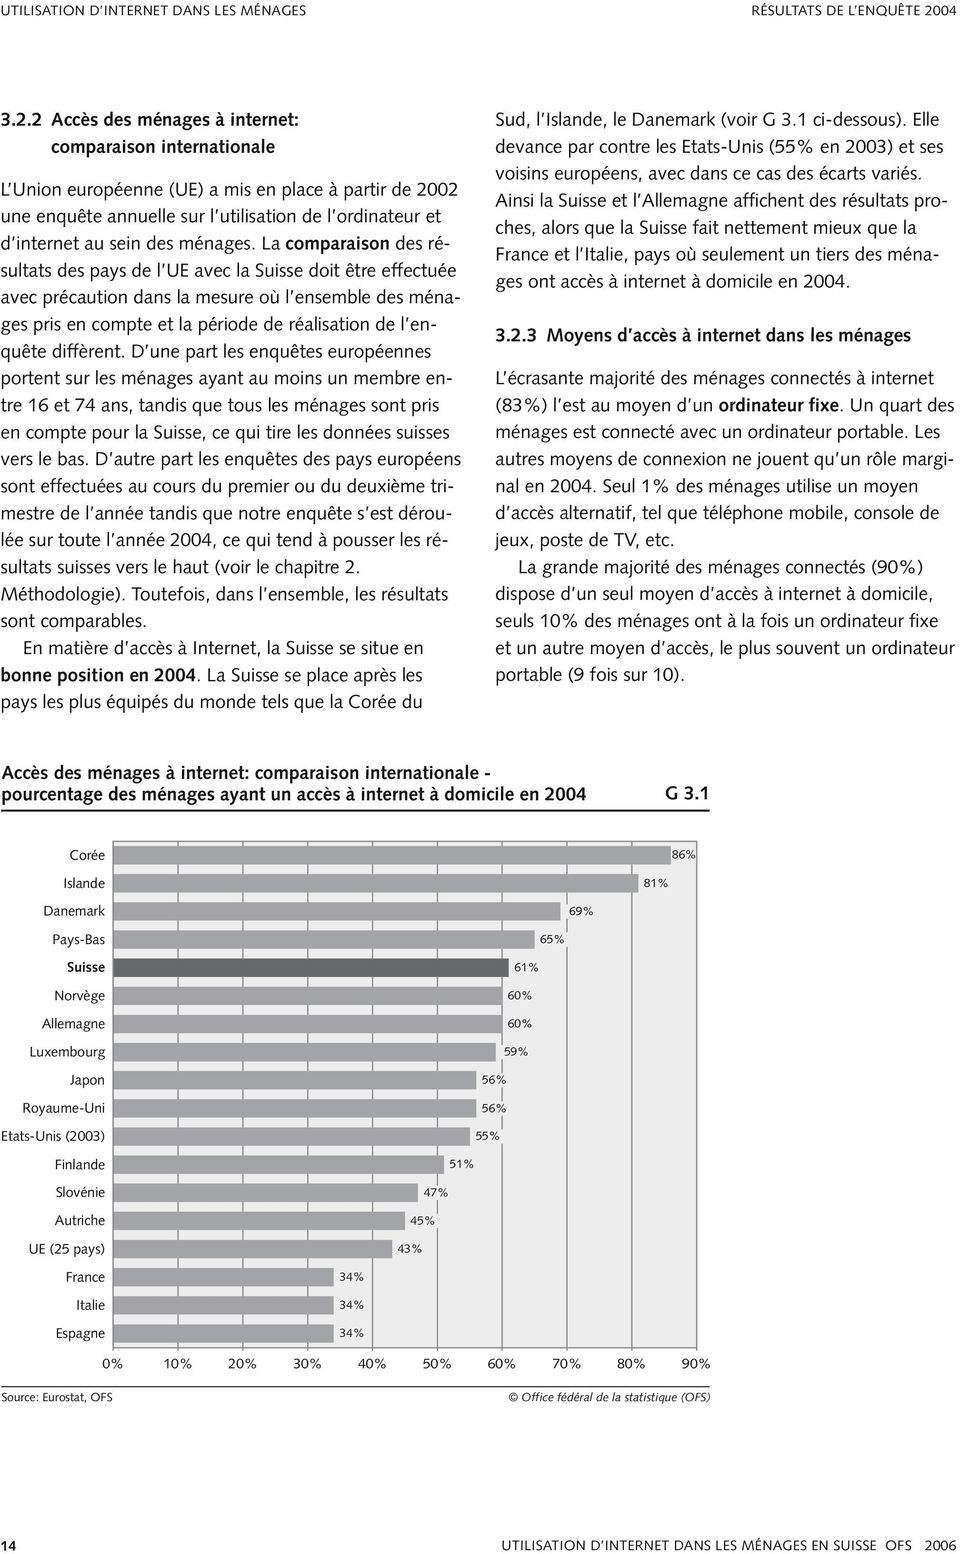 2 Accès des ménages à internet: comparaison internationale L Union européenne (UE) a mis en place à partir de 2002 une enquête annuelle sur l utilisation de l ordinateur et d internet au sein des